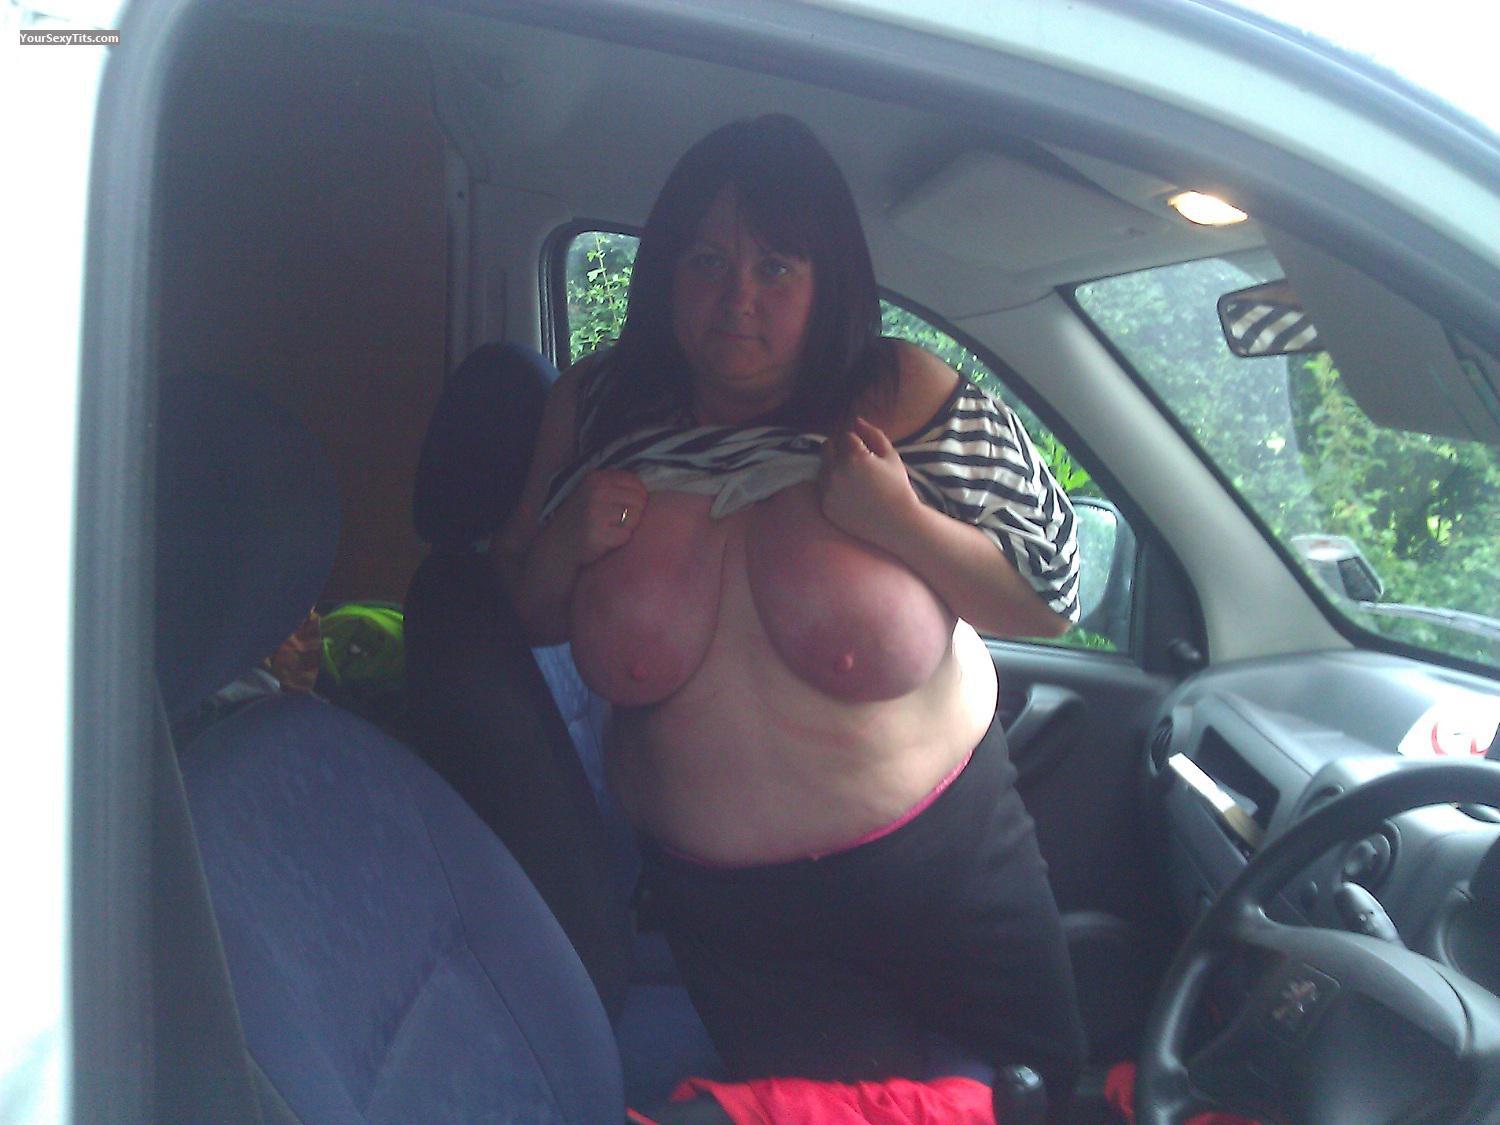 My Very big Tits Topless Selfie by Nicknack